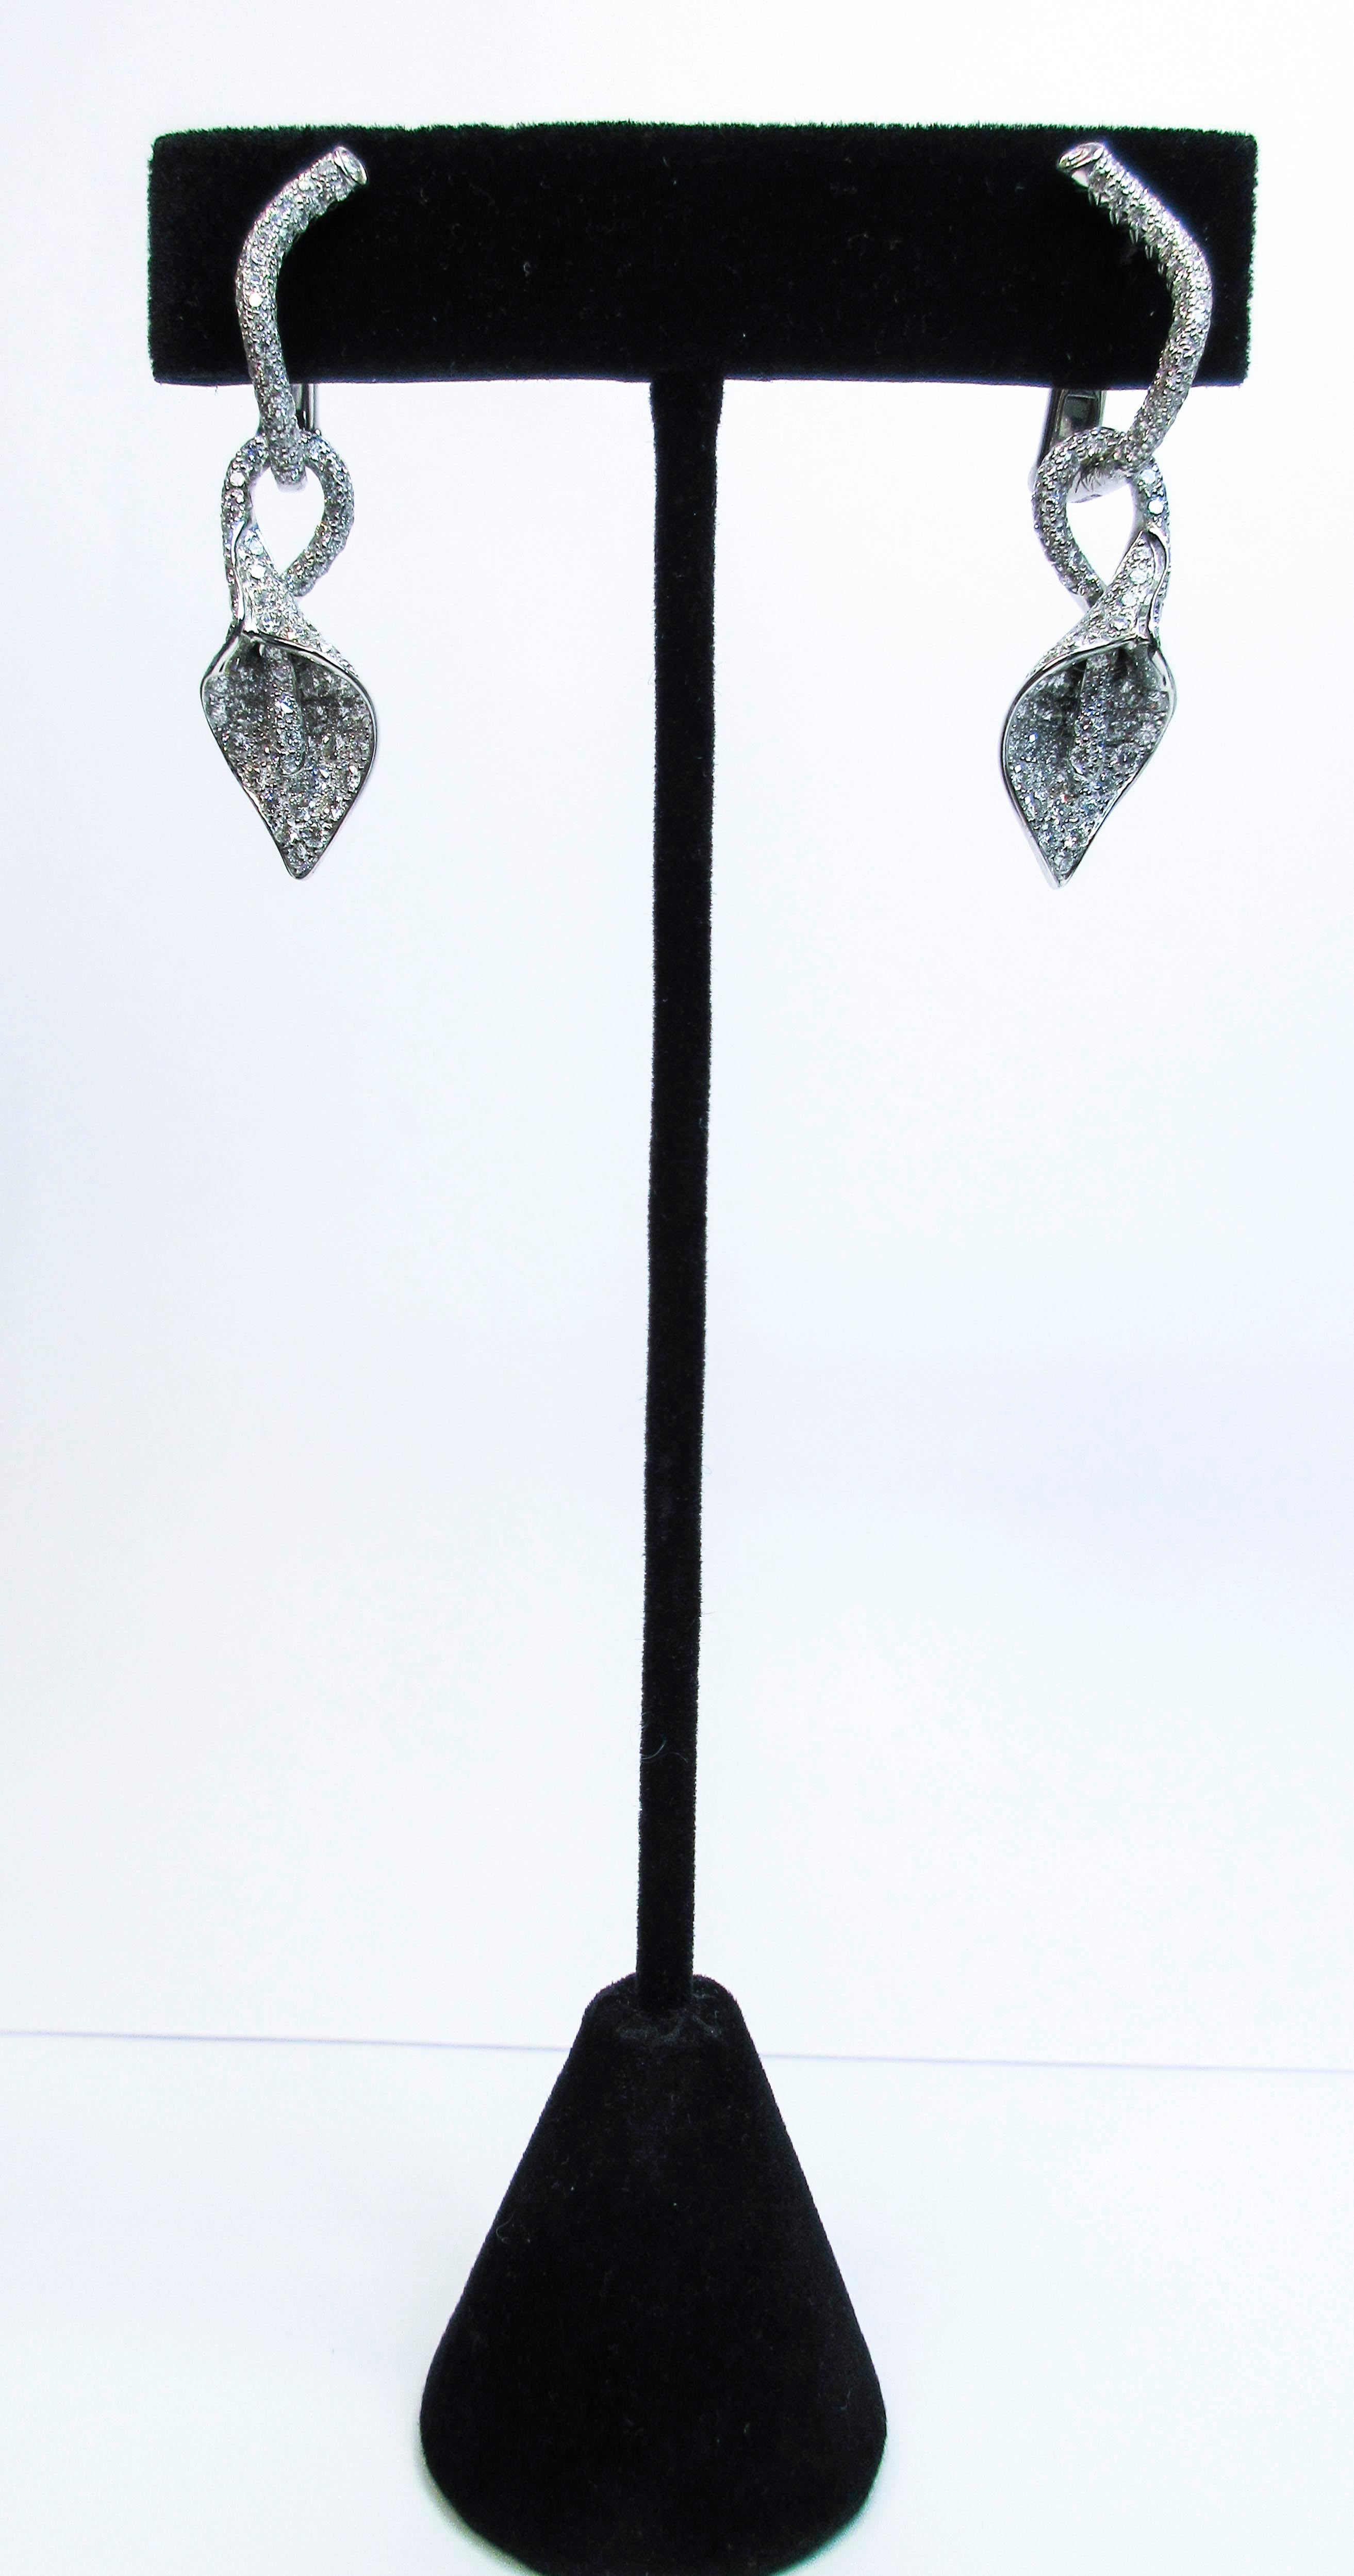 Cette magnifique paire de boucles d'oreilles design Asprey est composée d'un or blanc de 18kt. Comprend environ 3,30 cts de diamants pavés VS/E-F. La goutte florale est amovible. N'hésitez pas à nous poser toutes les questions que vous pourriez